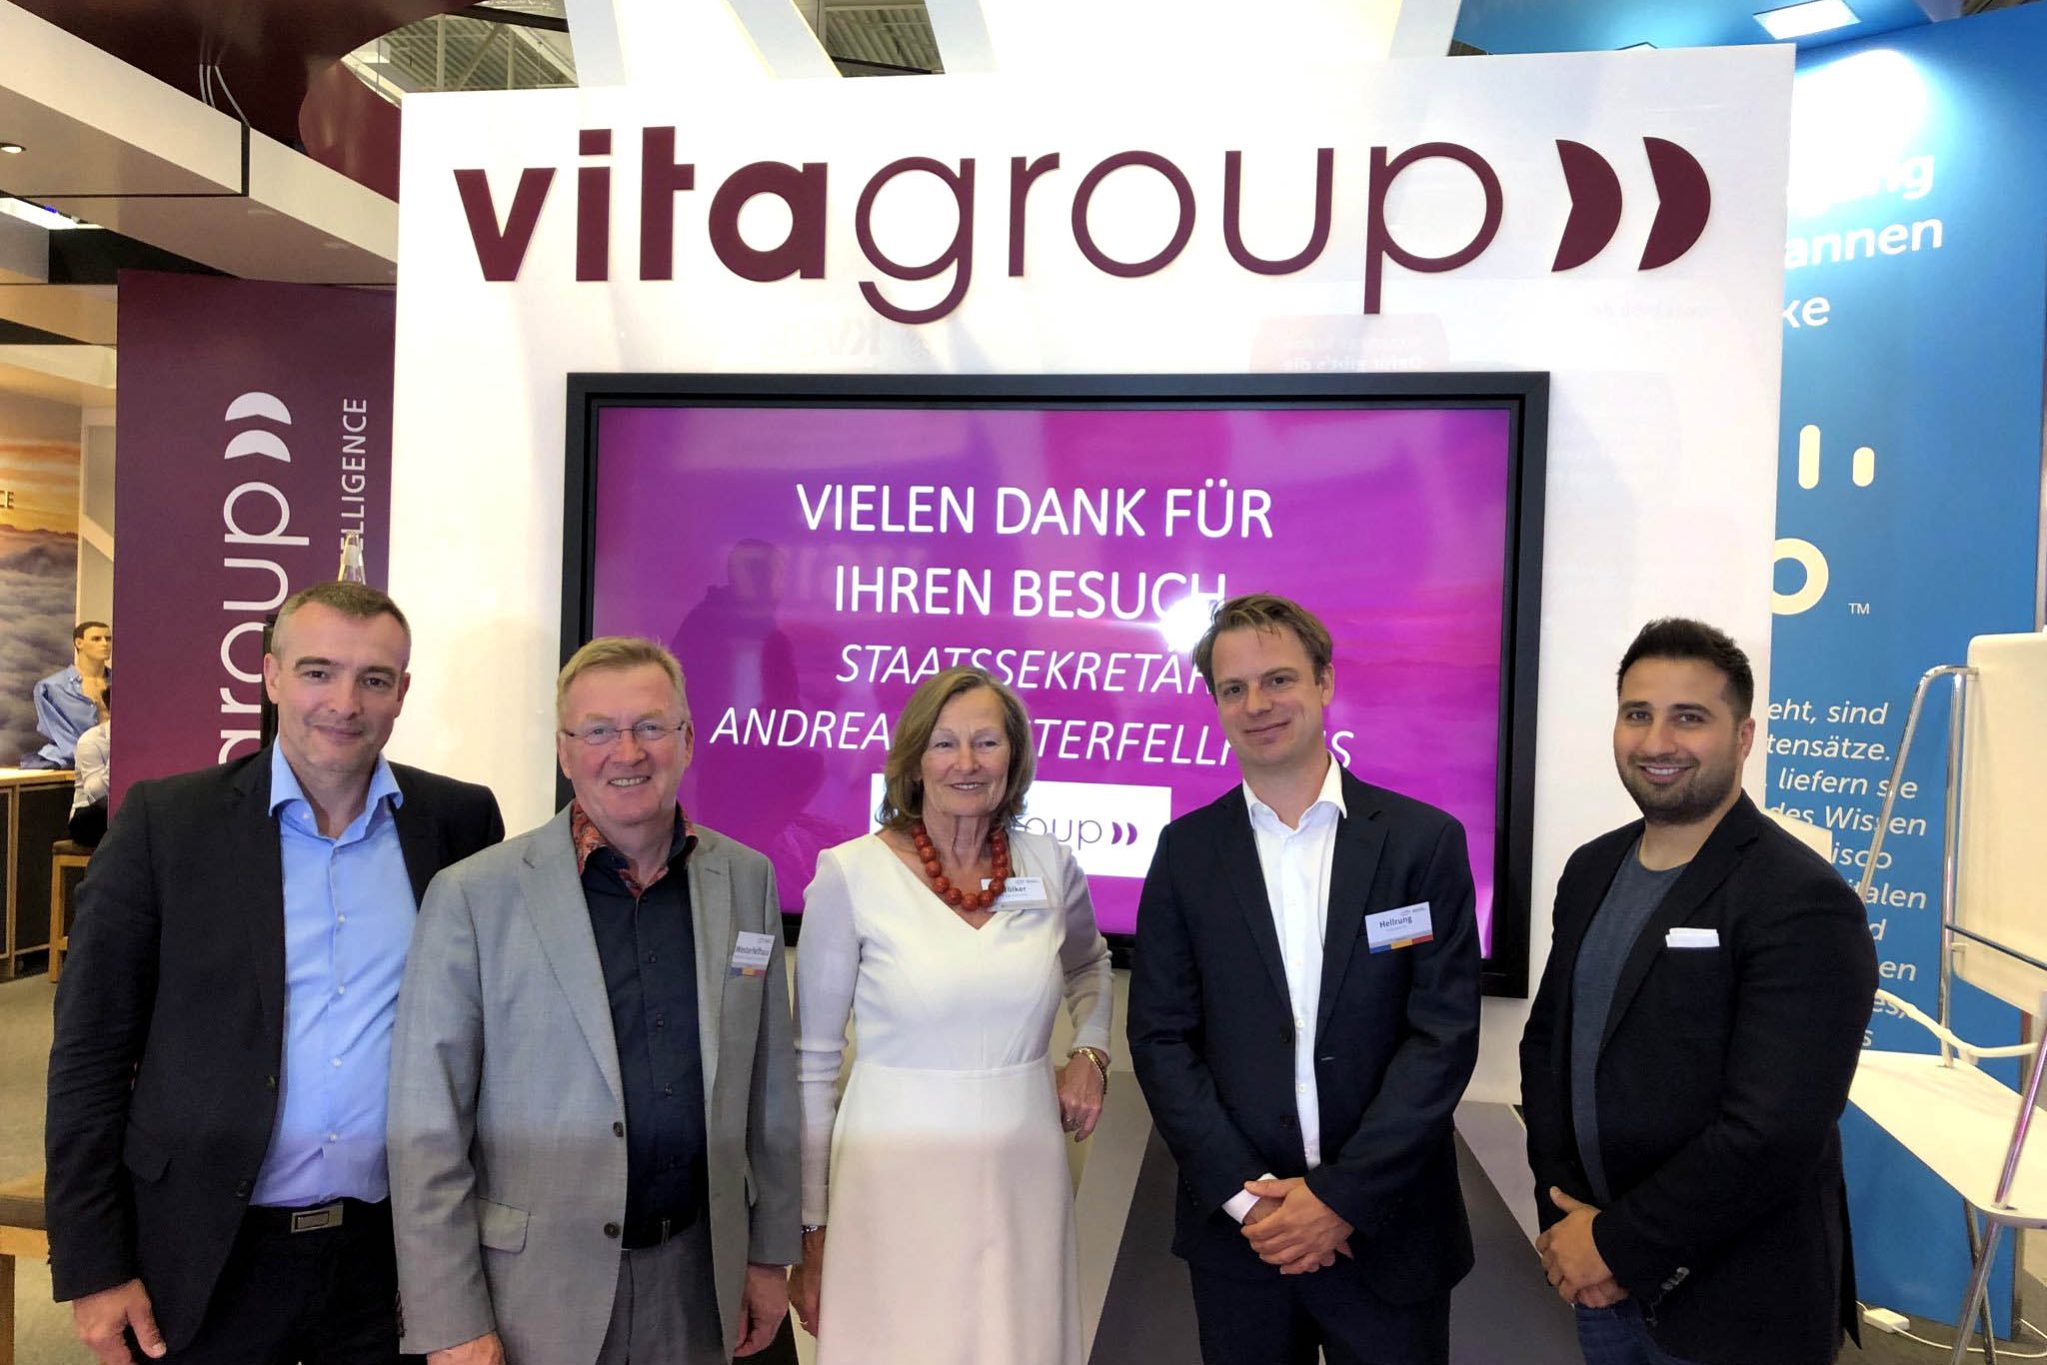 vitagroup auf dem HSK 2019 mit Ingrid Völker und Andreas WEsterfellhaus (1)